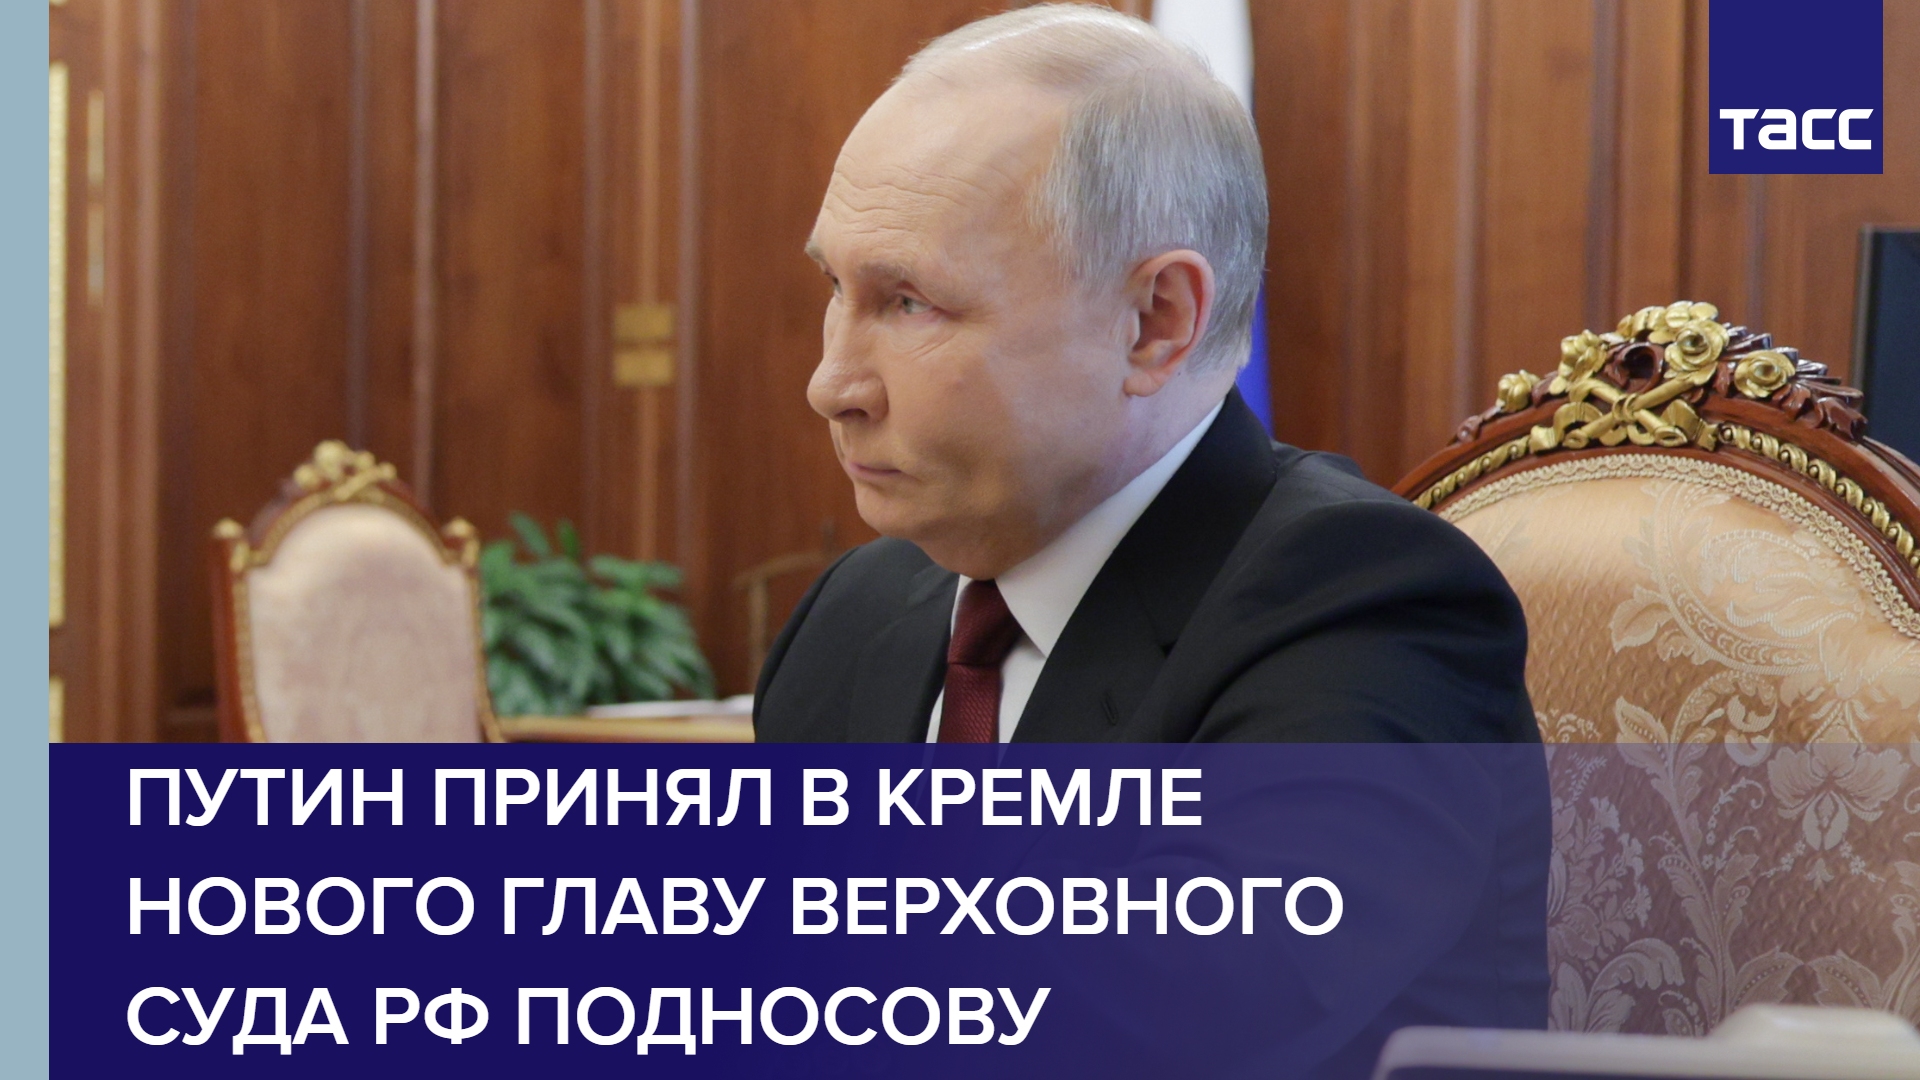 Путин принял в Кремле нового главу Верховного суда РФ Подносову